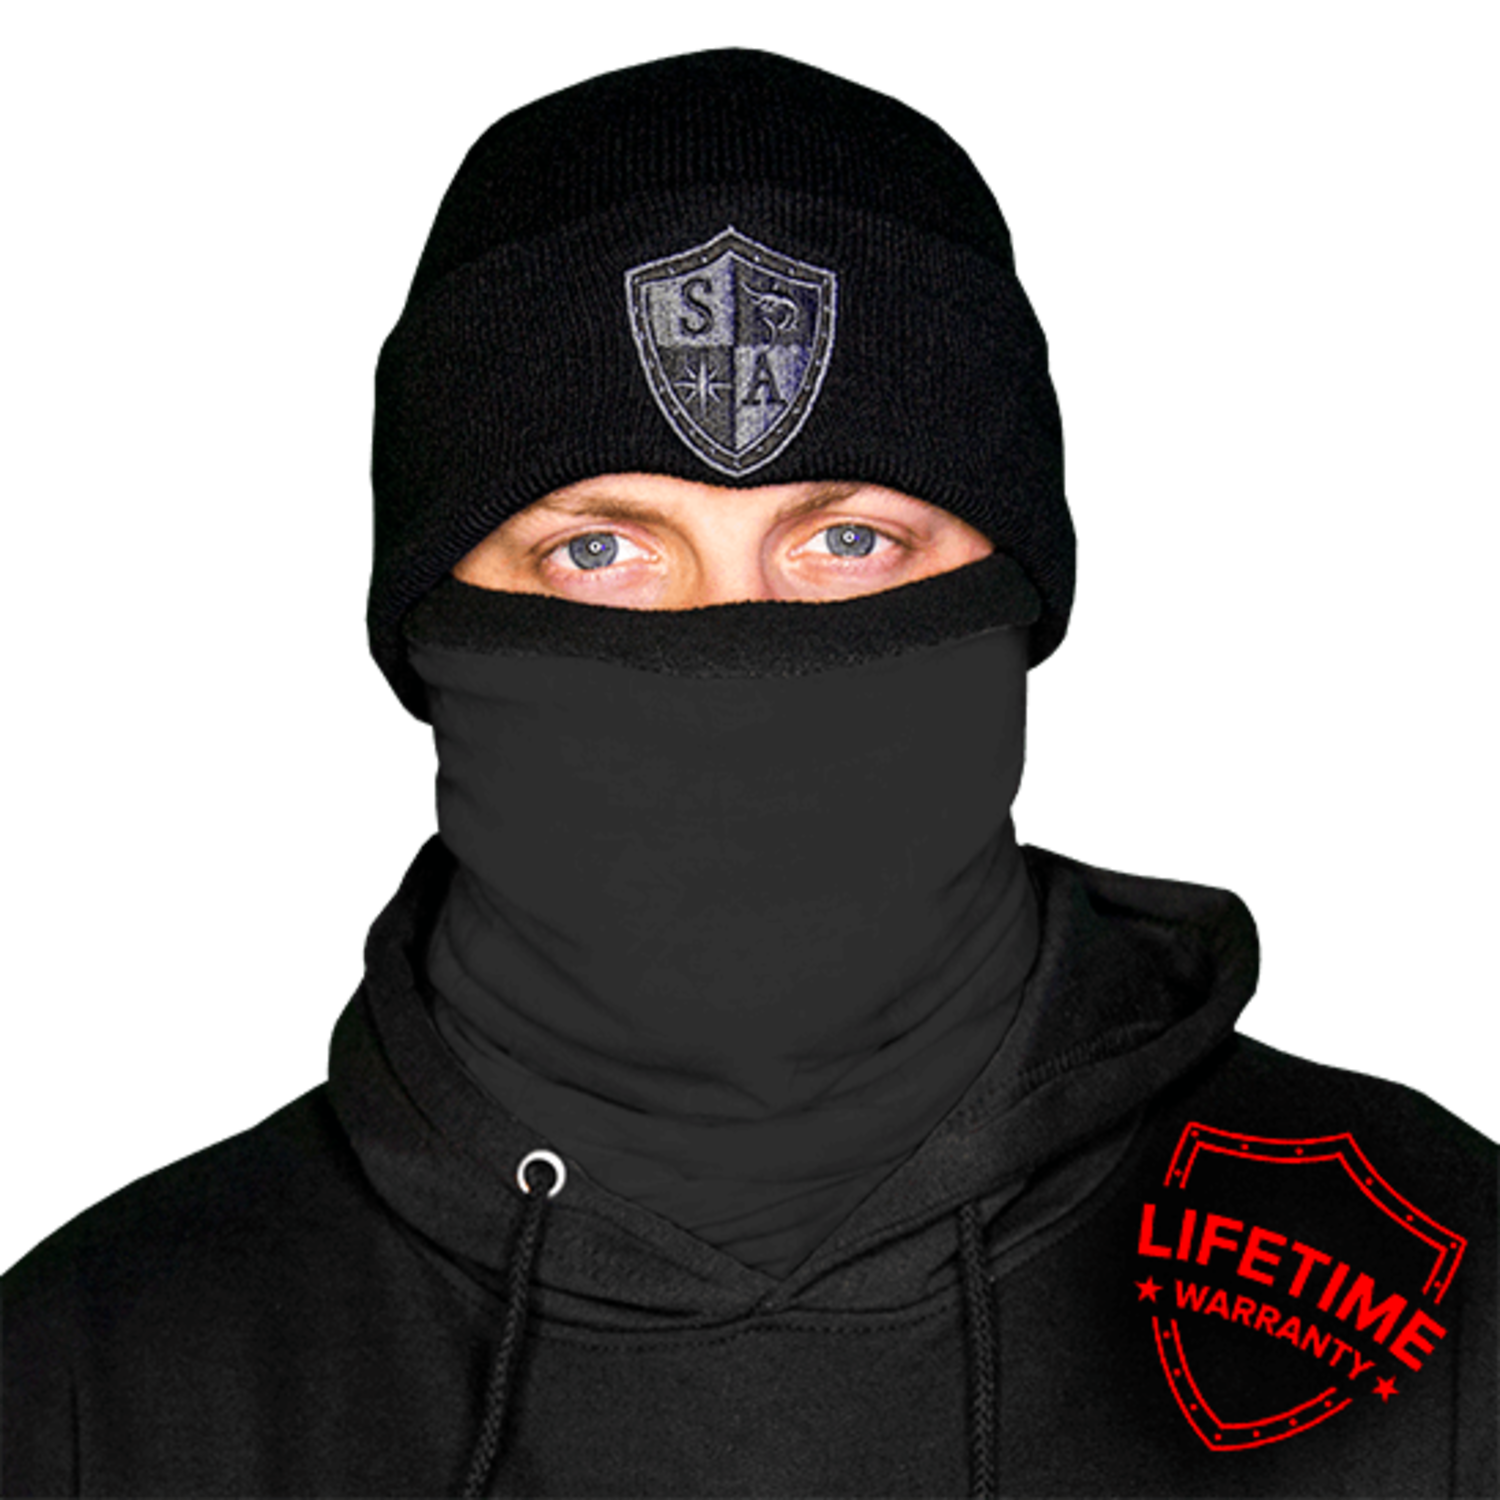 https://cdn.shoplightspeed.com/shops/633370/files/29824579/1500x4000x3/sa-frost-tech-fleece-lined-face-shield-tactical-bl.jpg